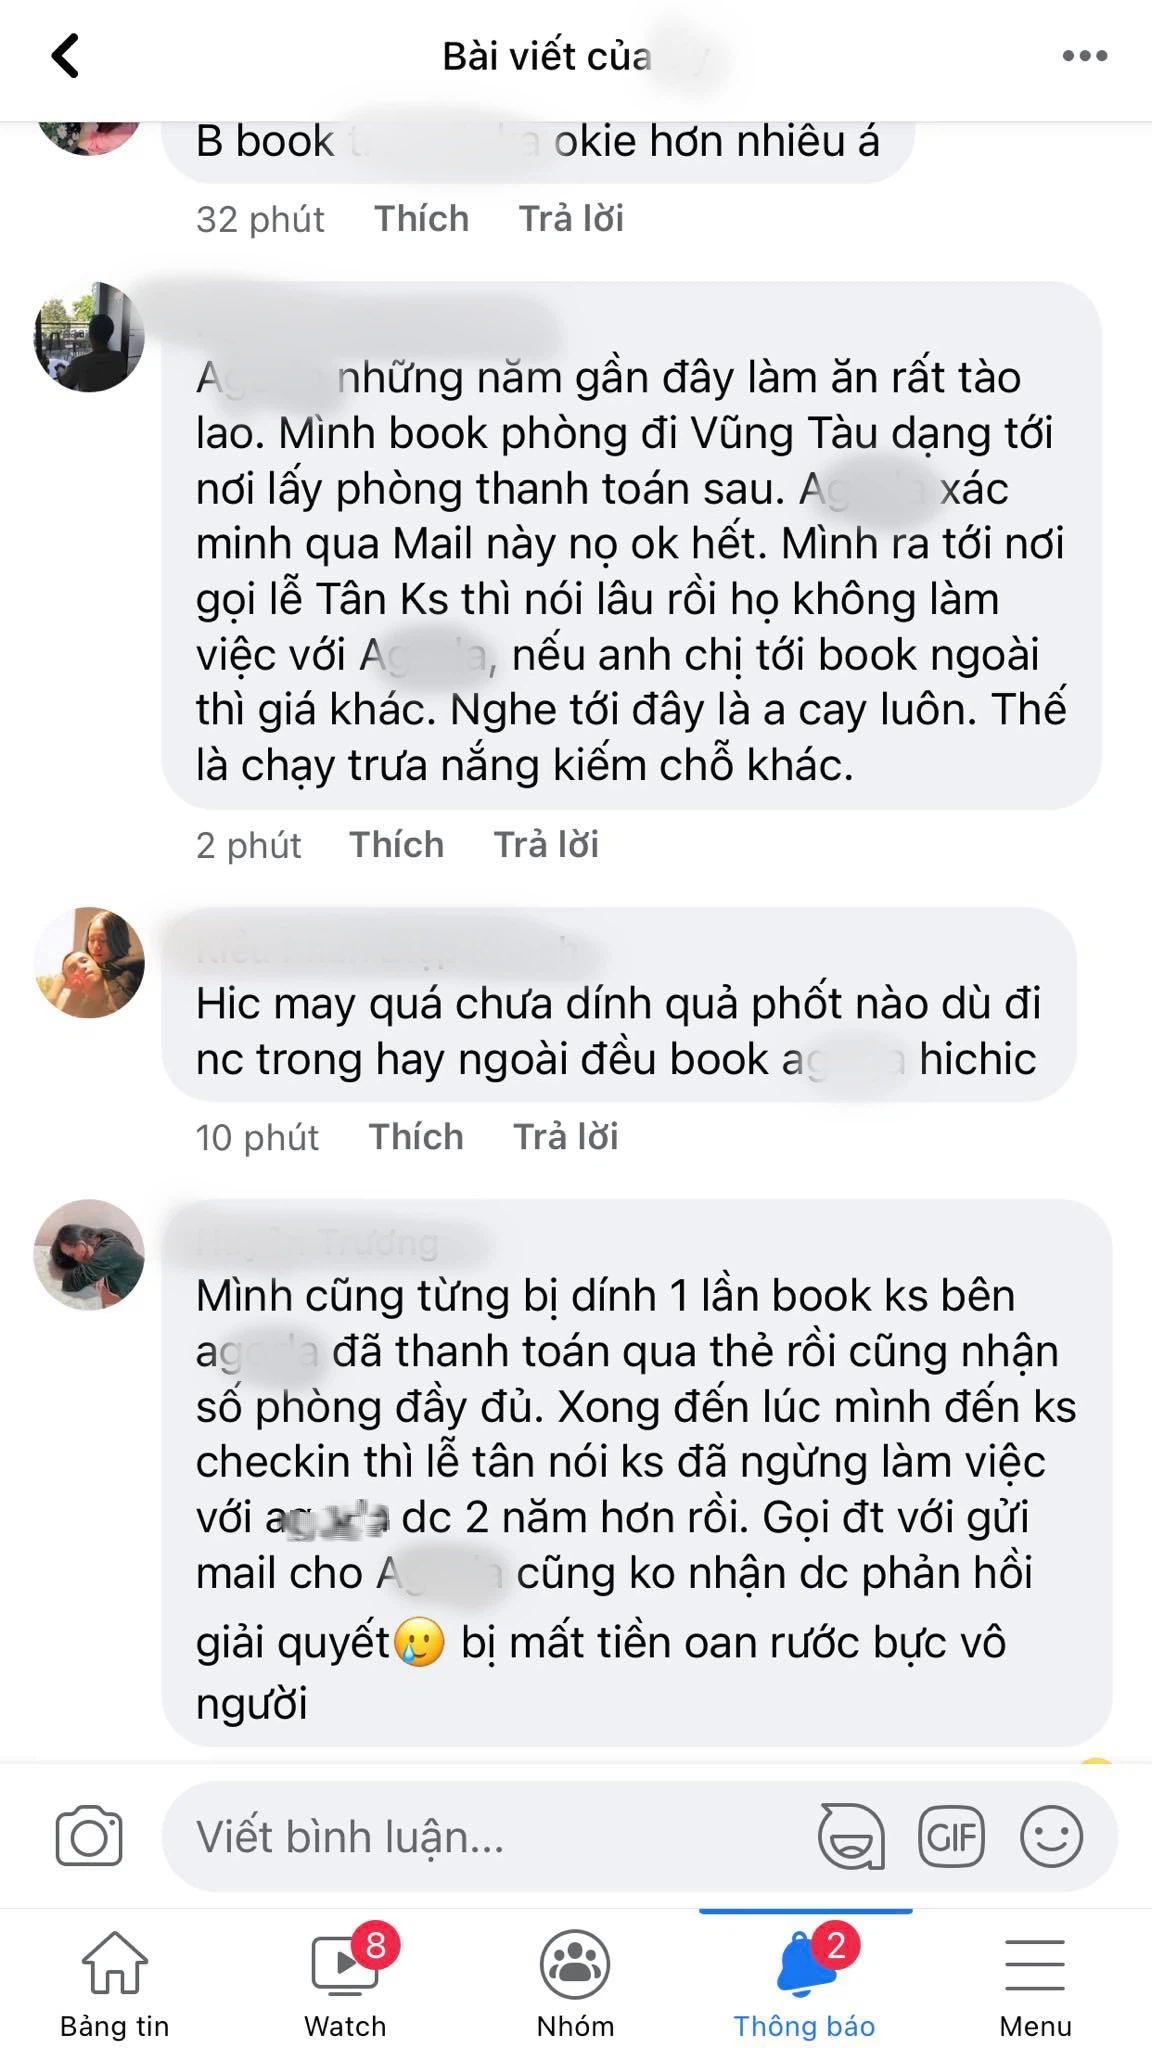 Ứng dụng đặt khách sạn nổi tiếng ở Việt Nam nhận &quot;liên hoàn phốt&quot; sau khi bị một khách nữ &quot;tố&quot; nhận tiền nhưng không đặt phòng, tự ý huỷ phòng trước giờ check-in của khách   - Ảnh 5.